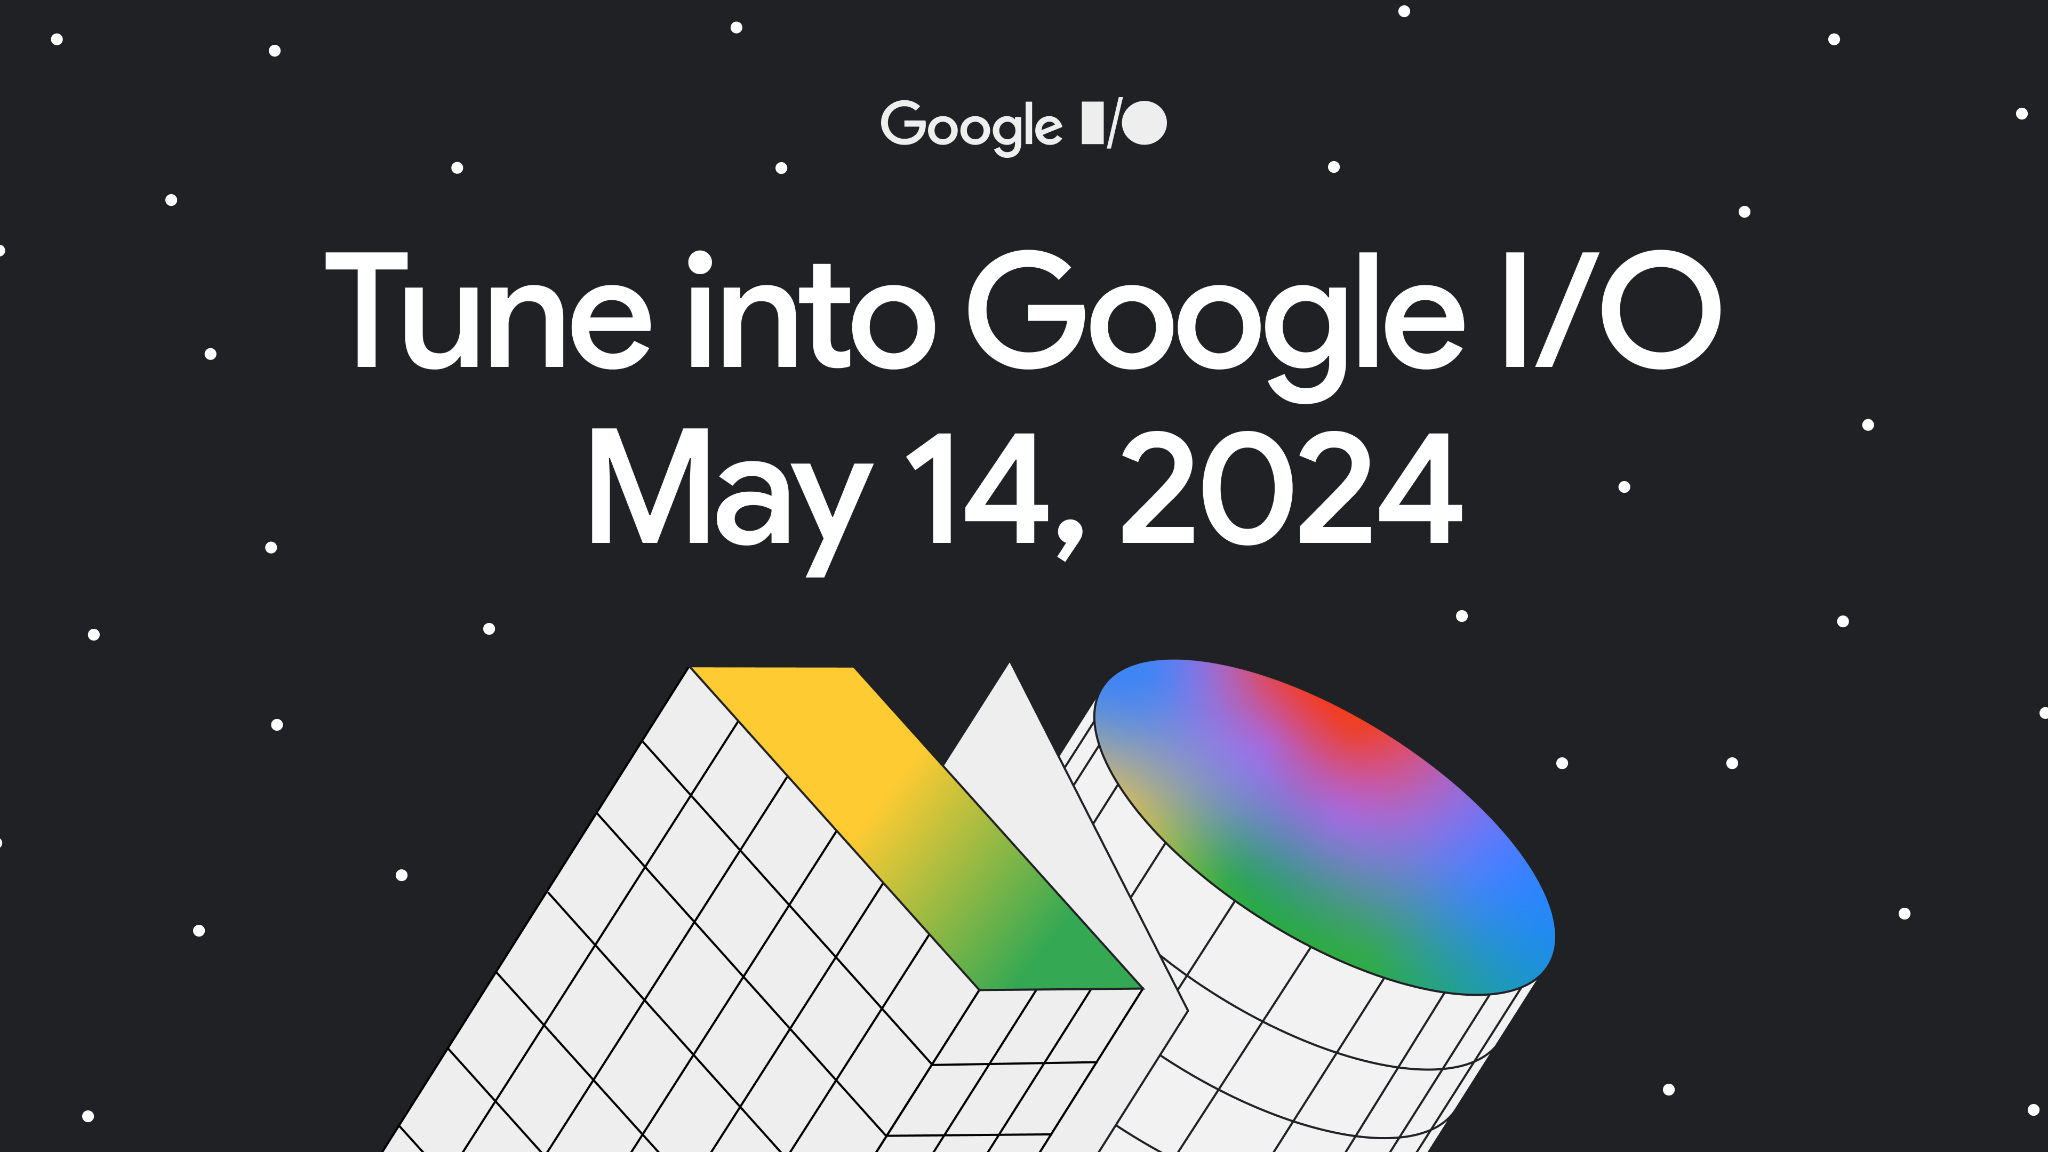 Tune into Google I/O, May 14, 2024